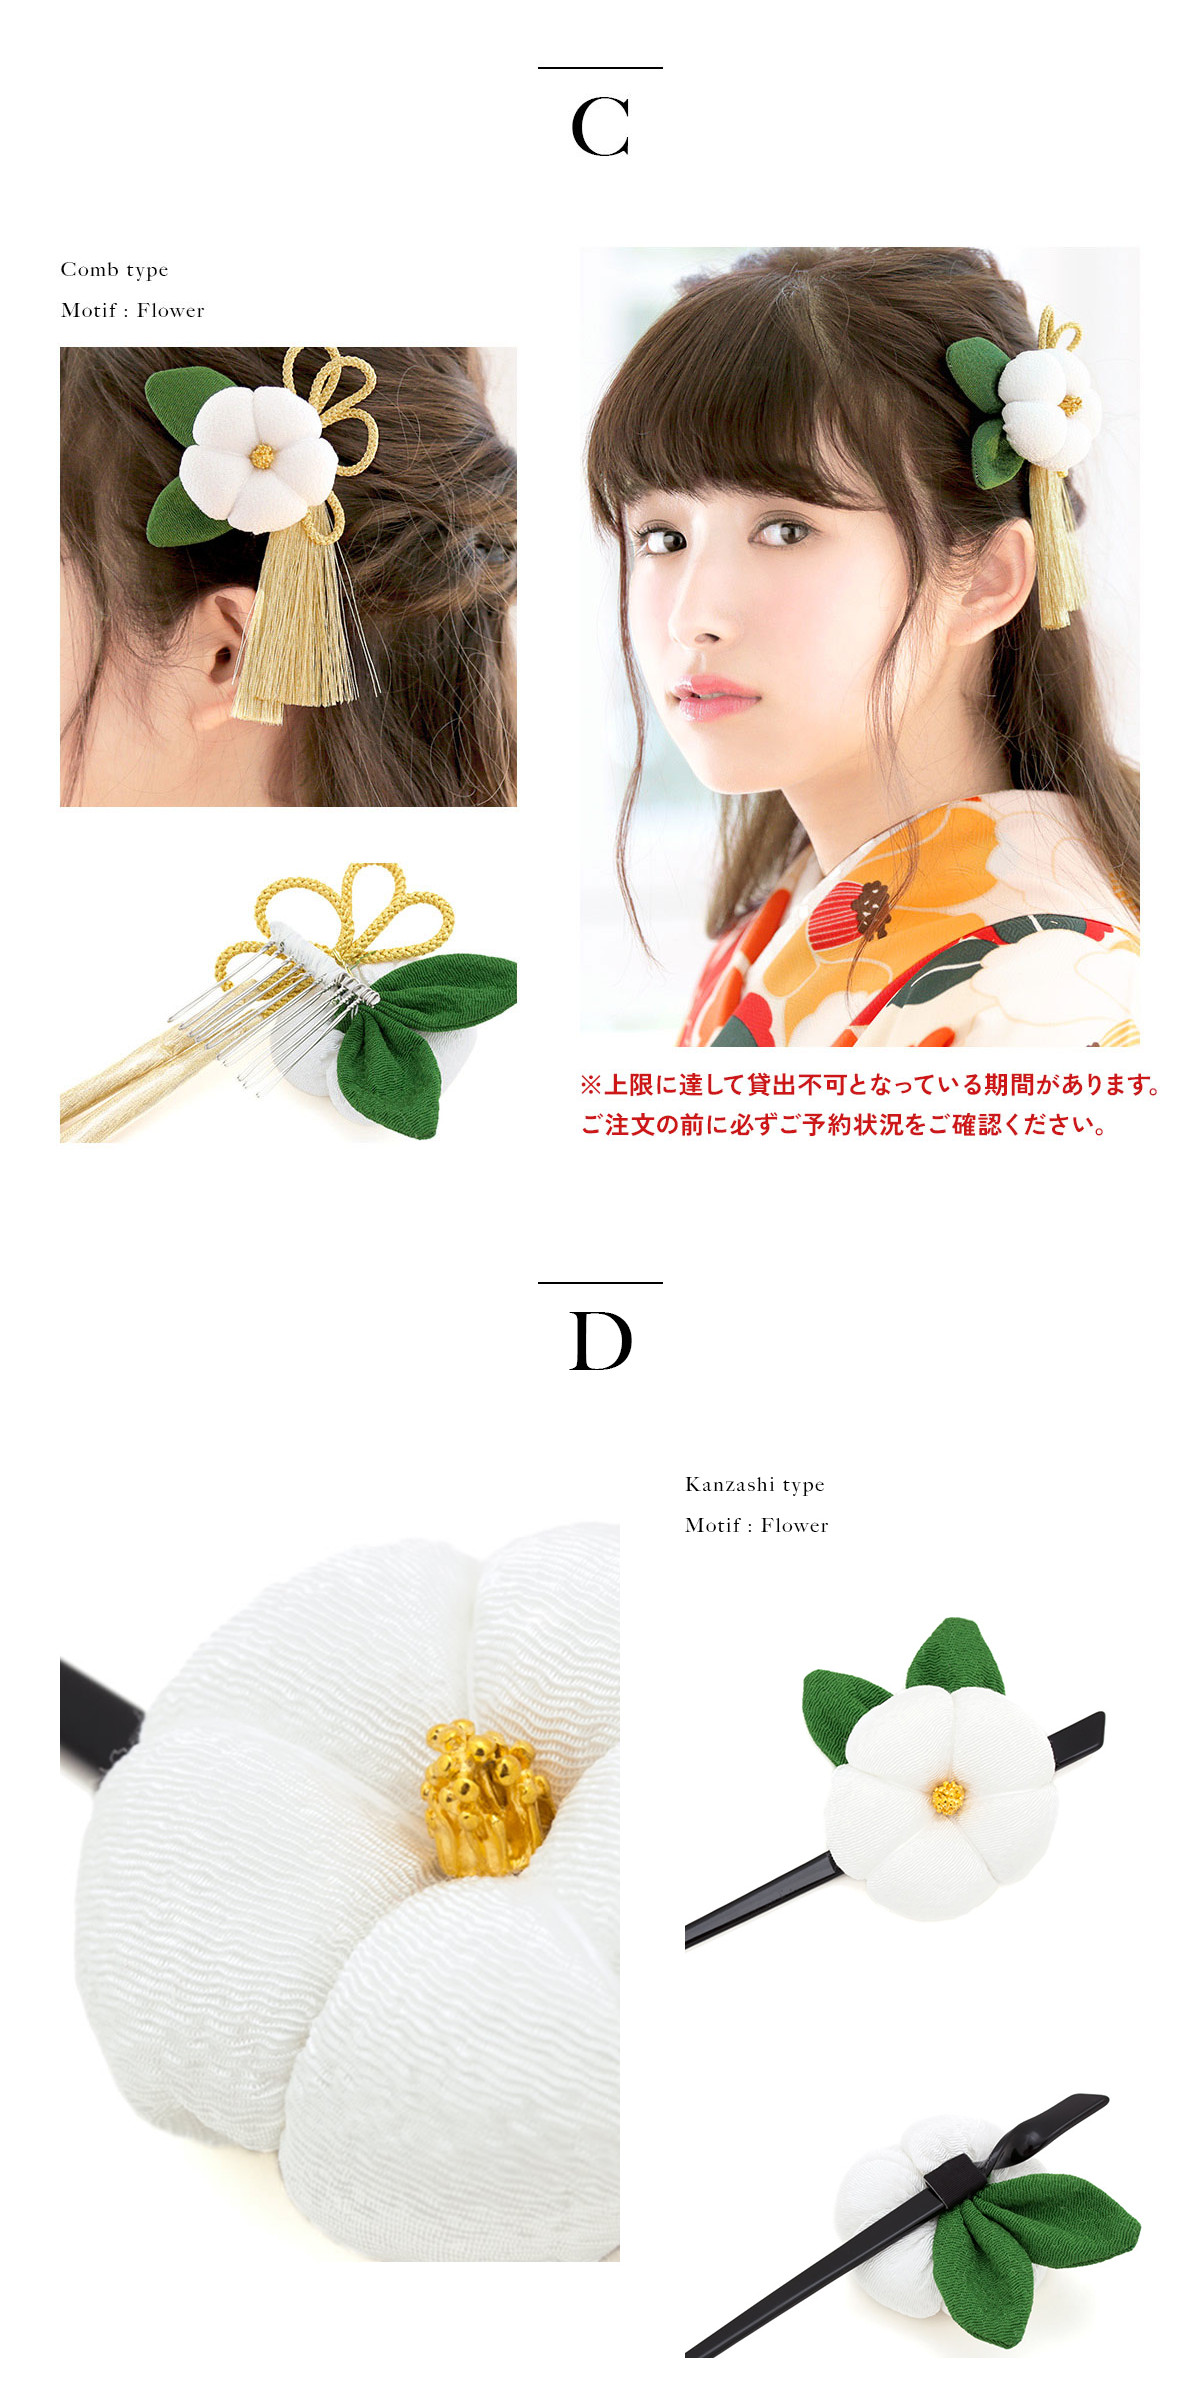 [ в аренду ][* hakama комплект специальный украшение для волос *] можно выбрать 14 вид! hakama комплект одновременно в аренду ограничение 